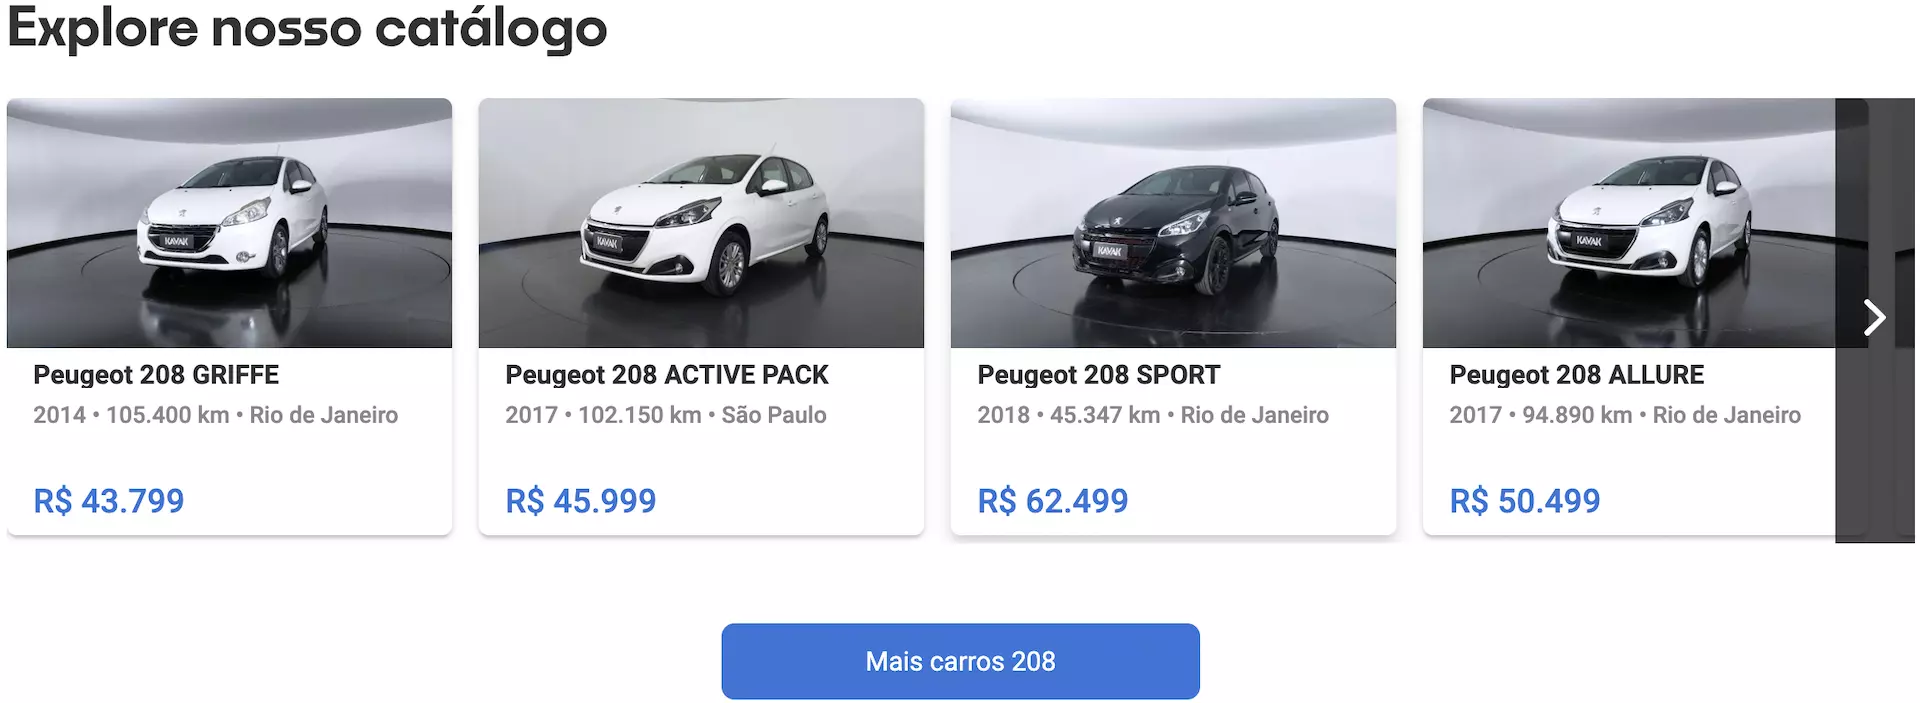 Peugeot 208 preço